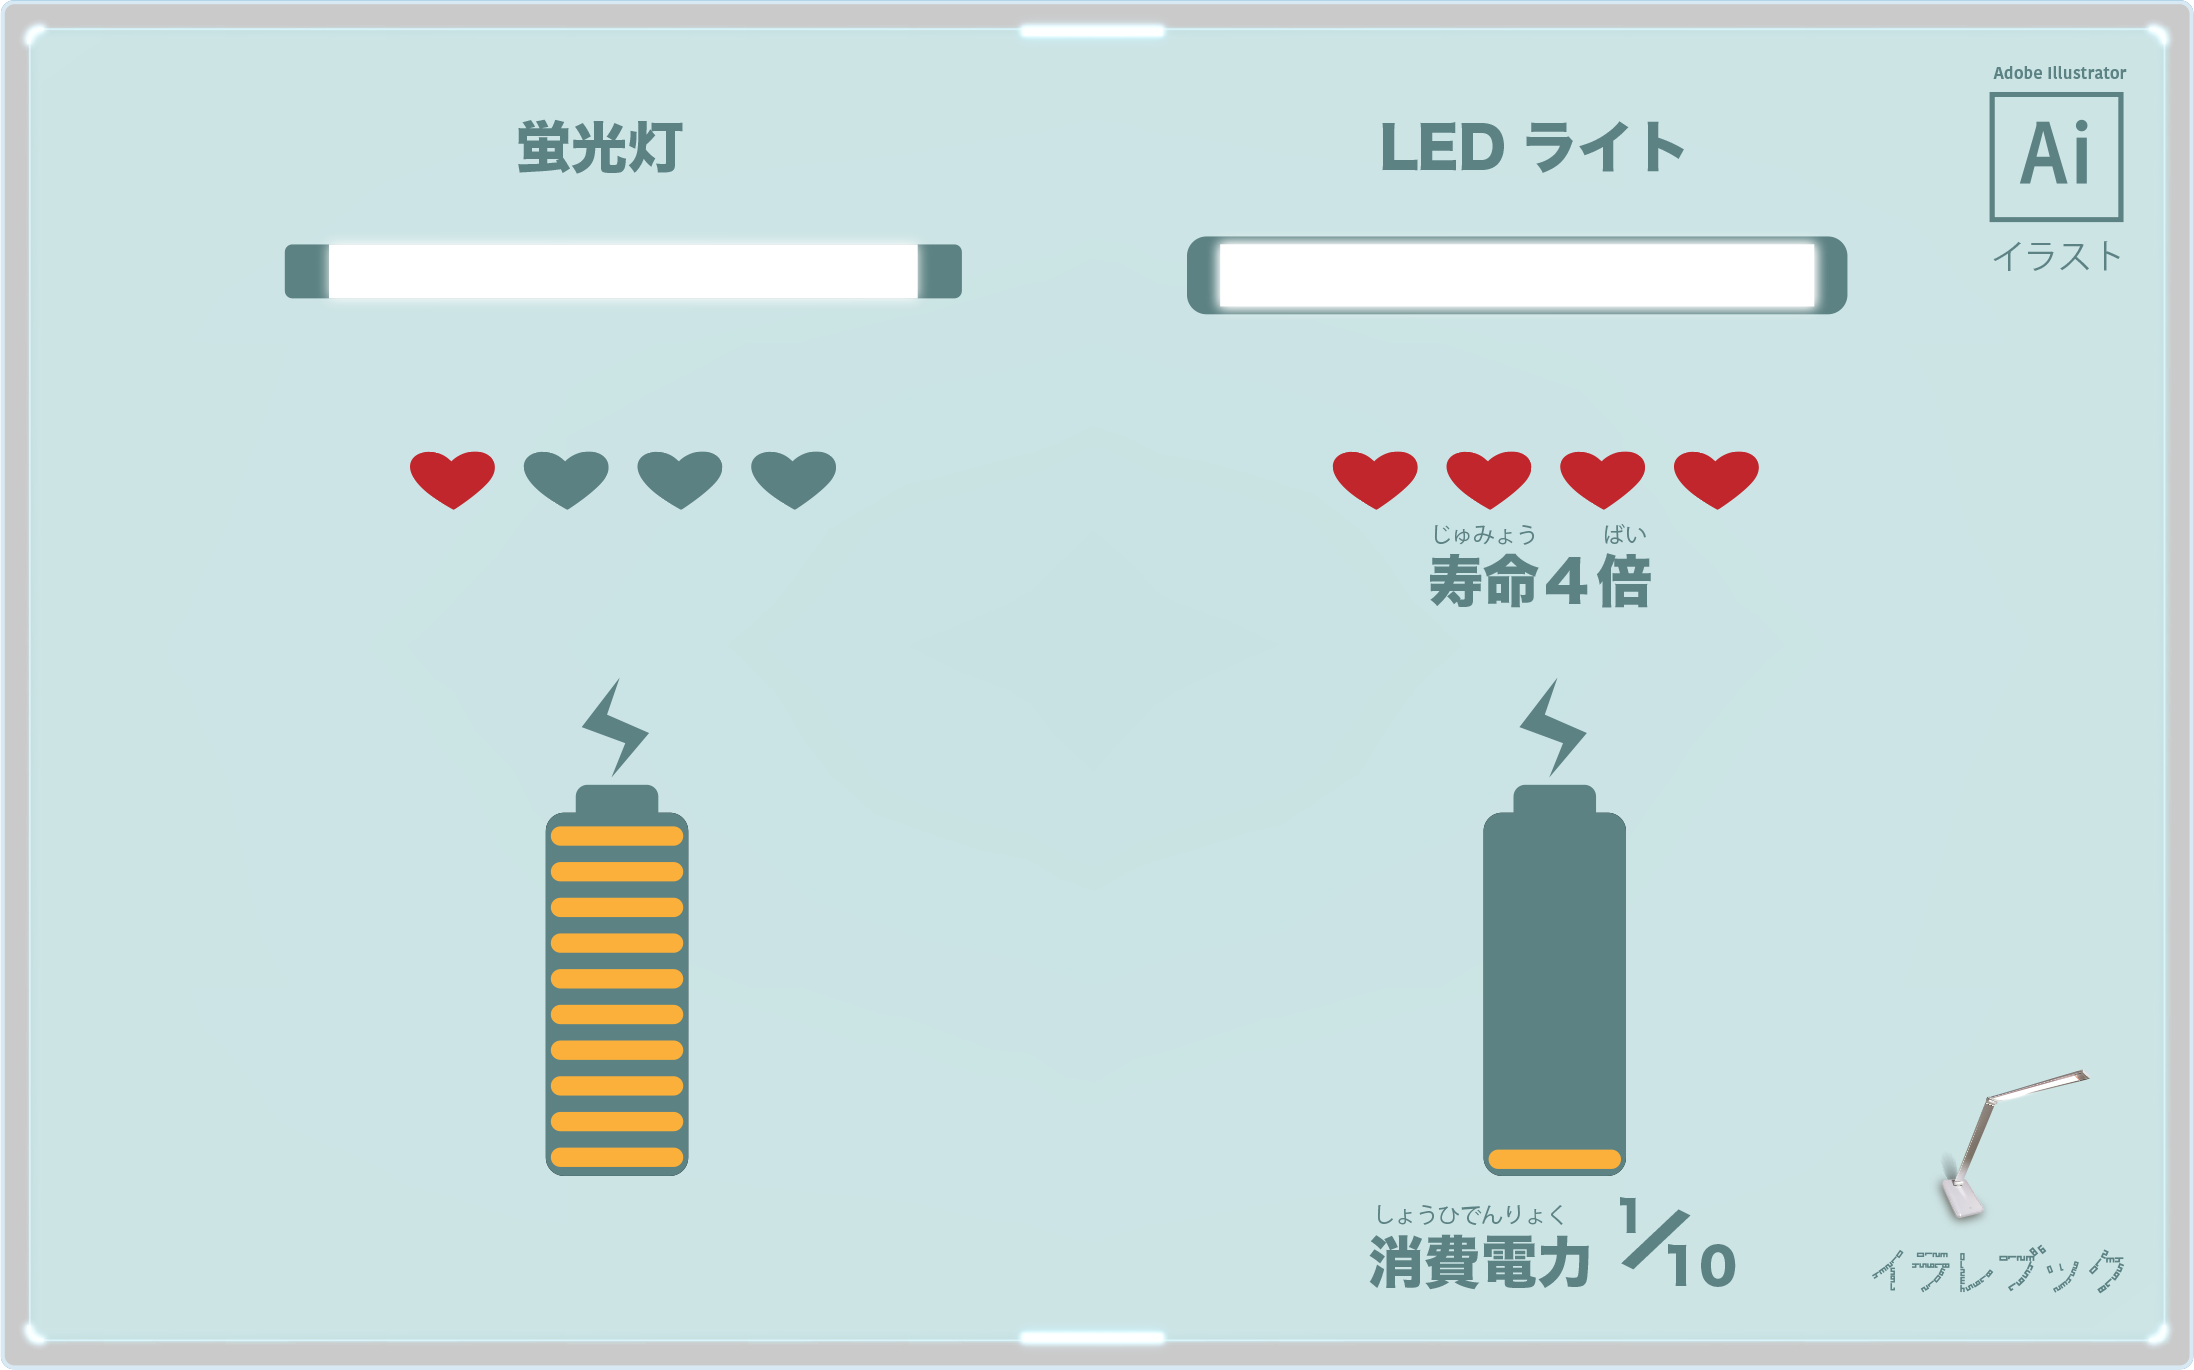 LEDライトは蛍光灯より寿命が4倍、消費電力10分の1